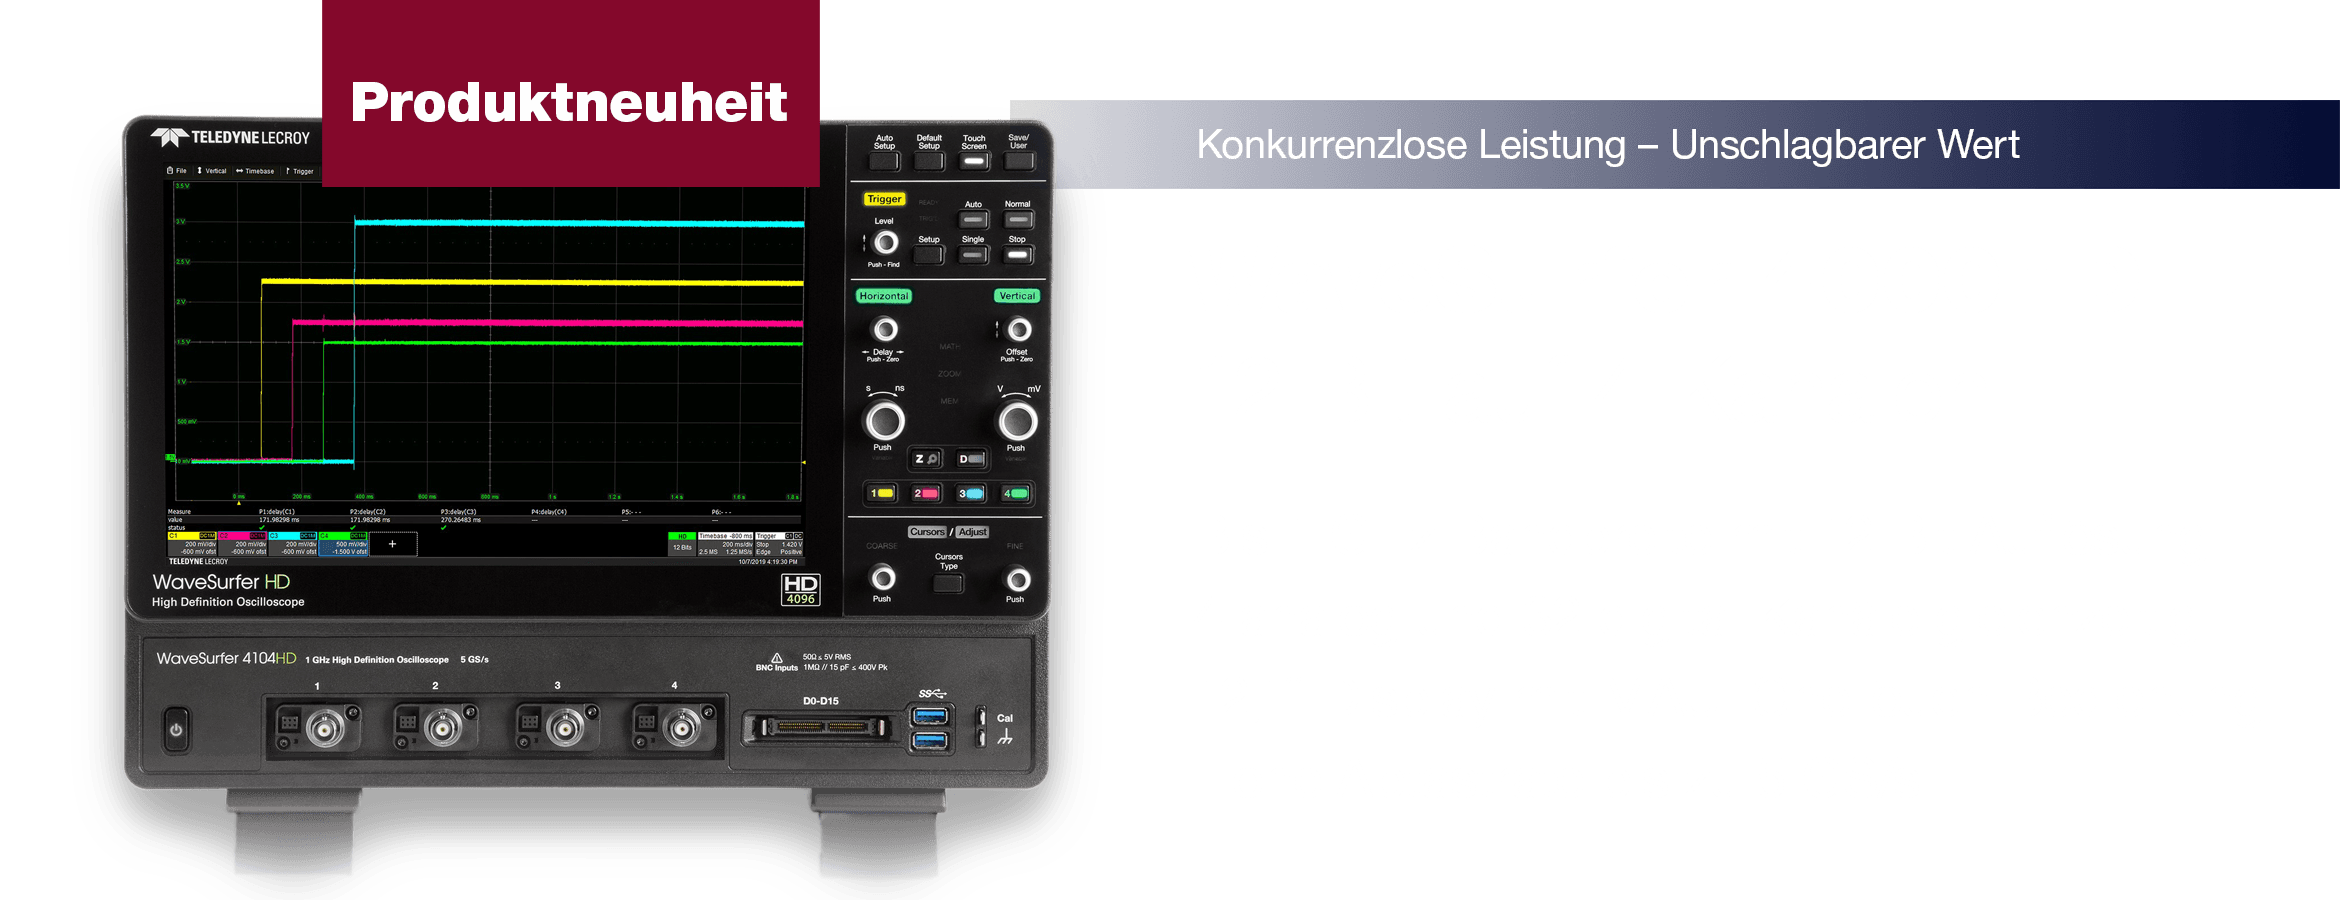 Der neue WaveSurfer 4000HD